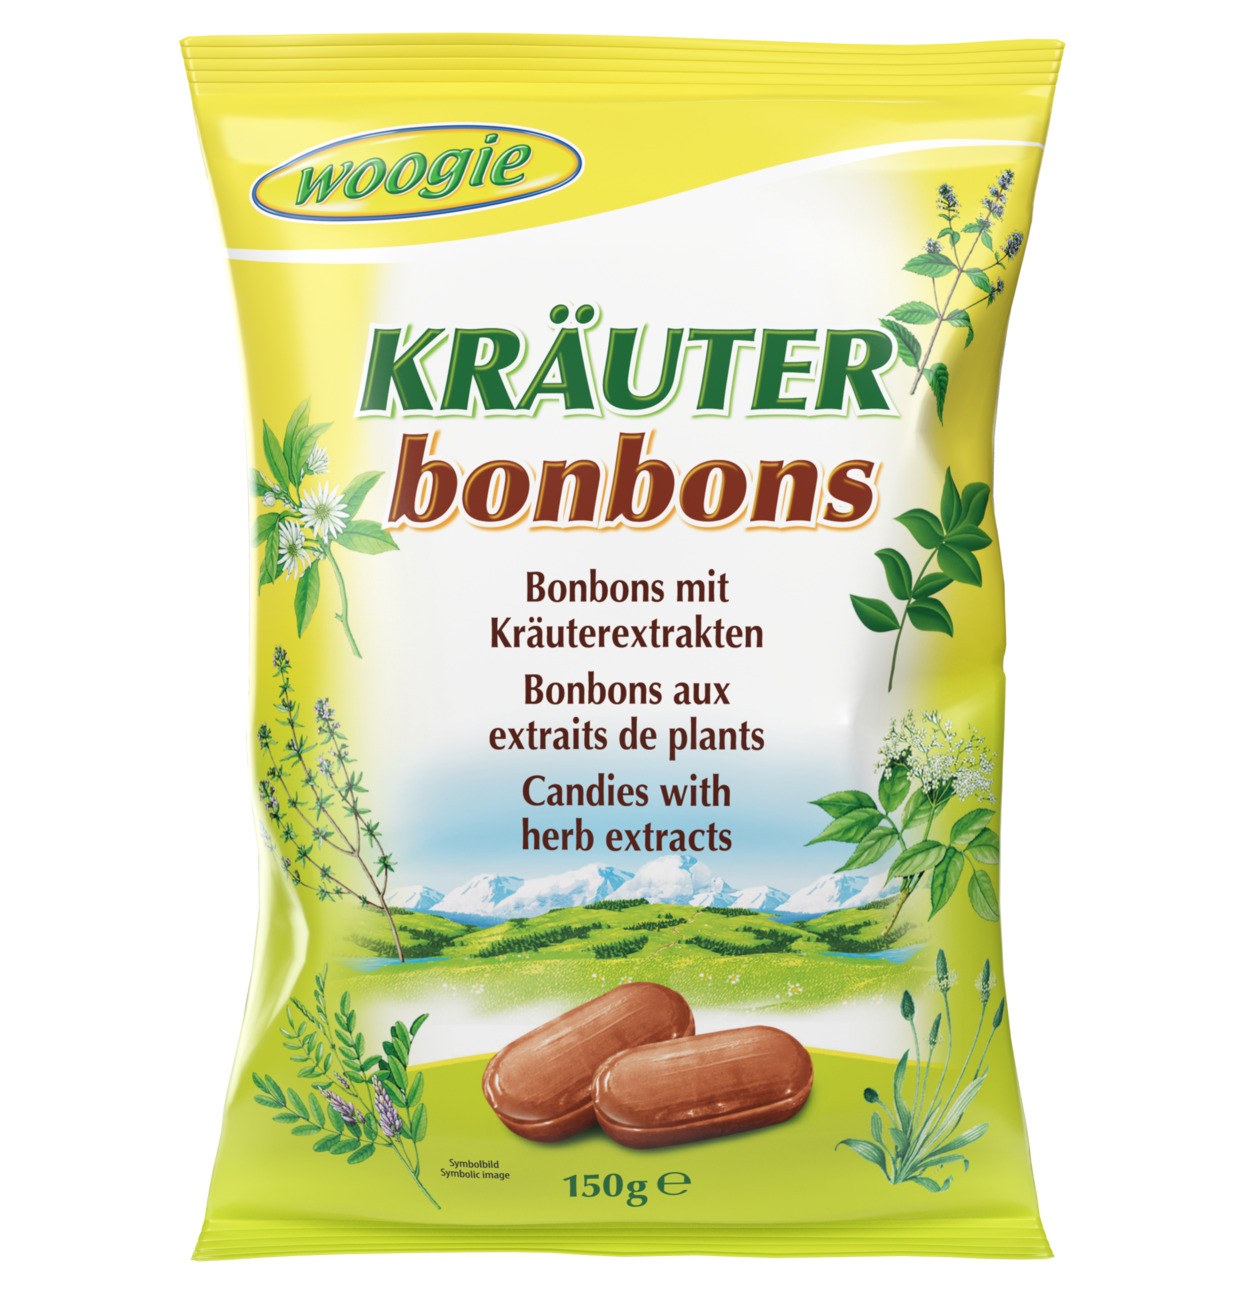 Woogie Kräuter BonBons 150g